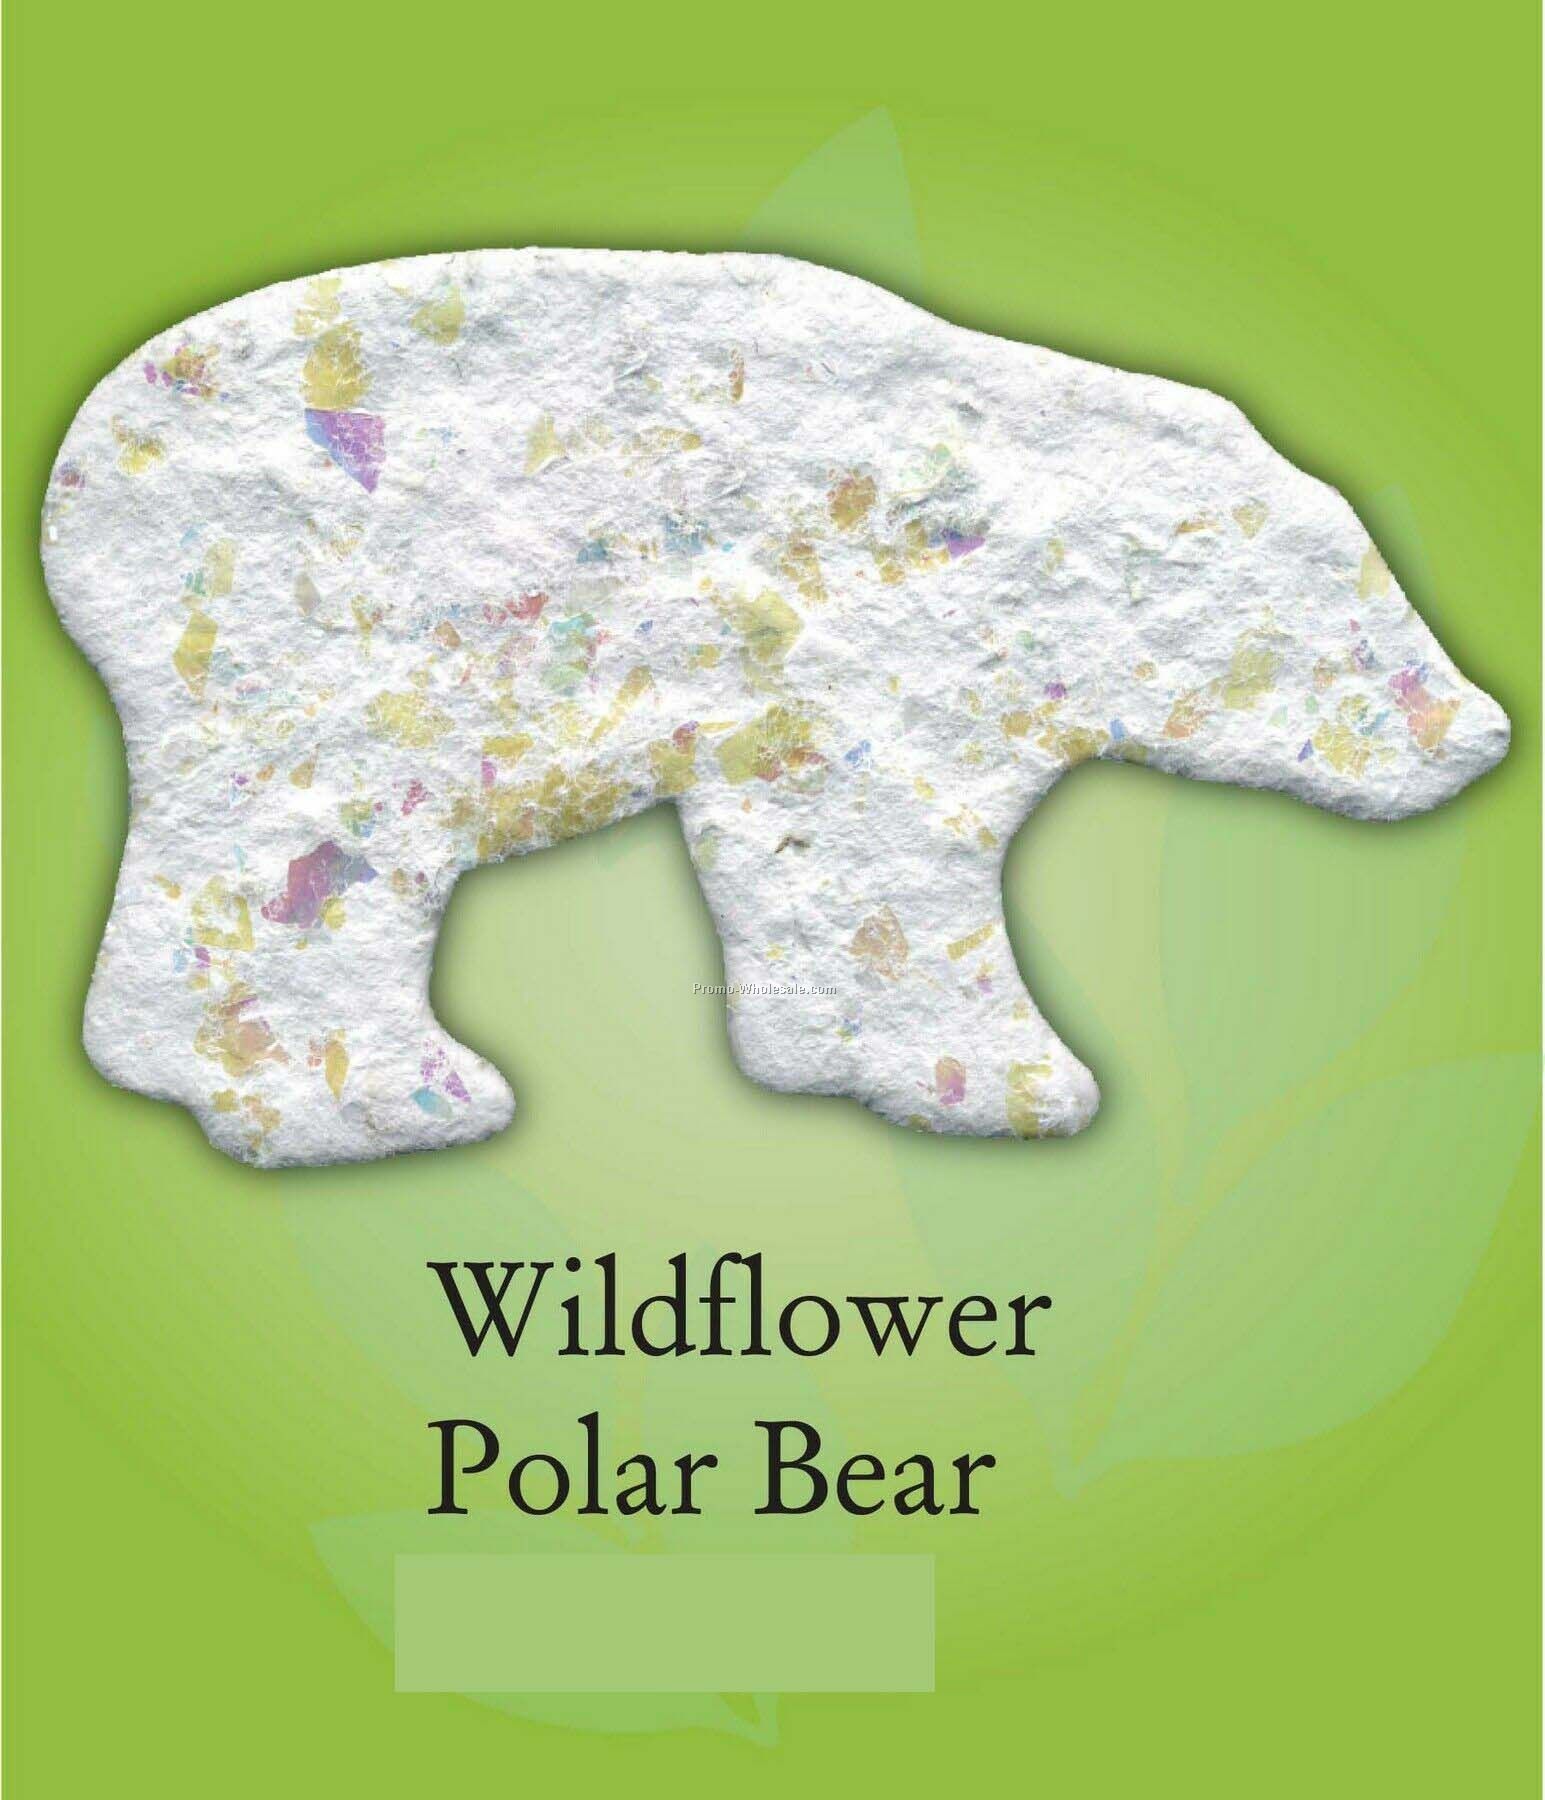 Wildflower Polar Bear Ornament W/ Embedded Seed